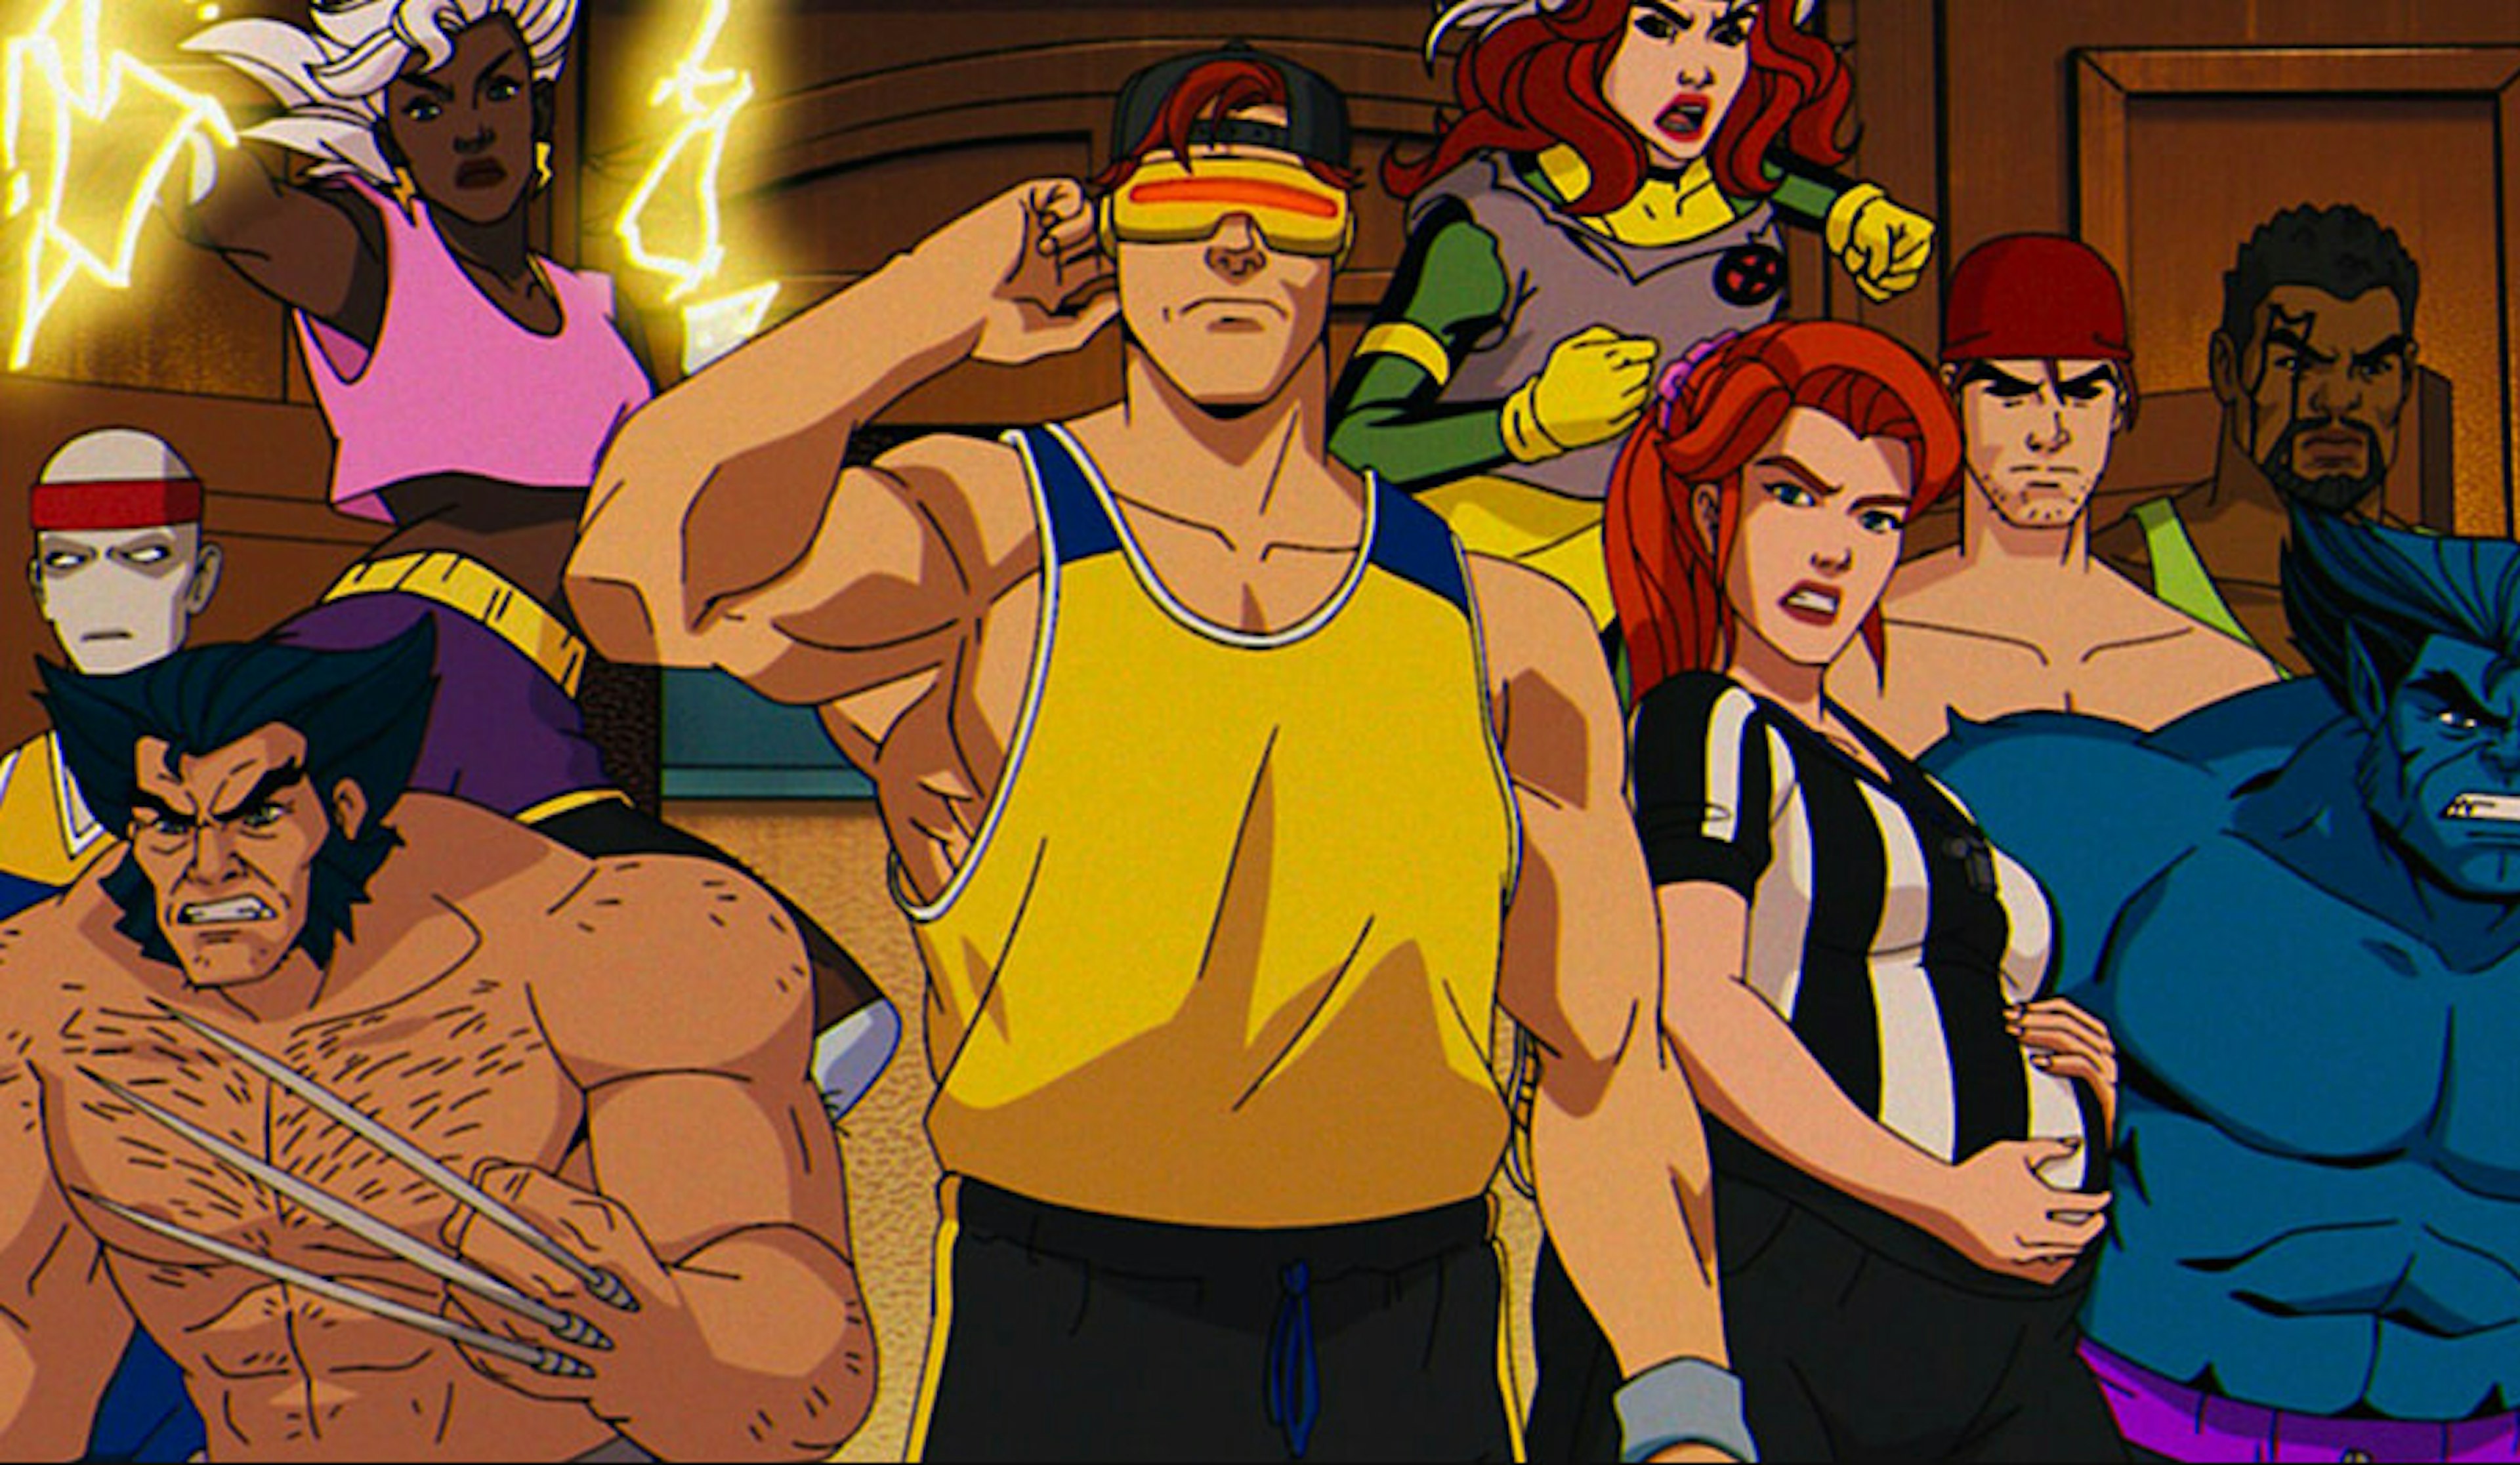 X-Men ‘97: comics, cartoons & nostalgia